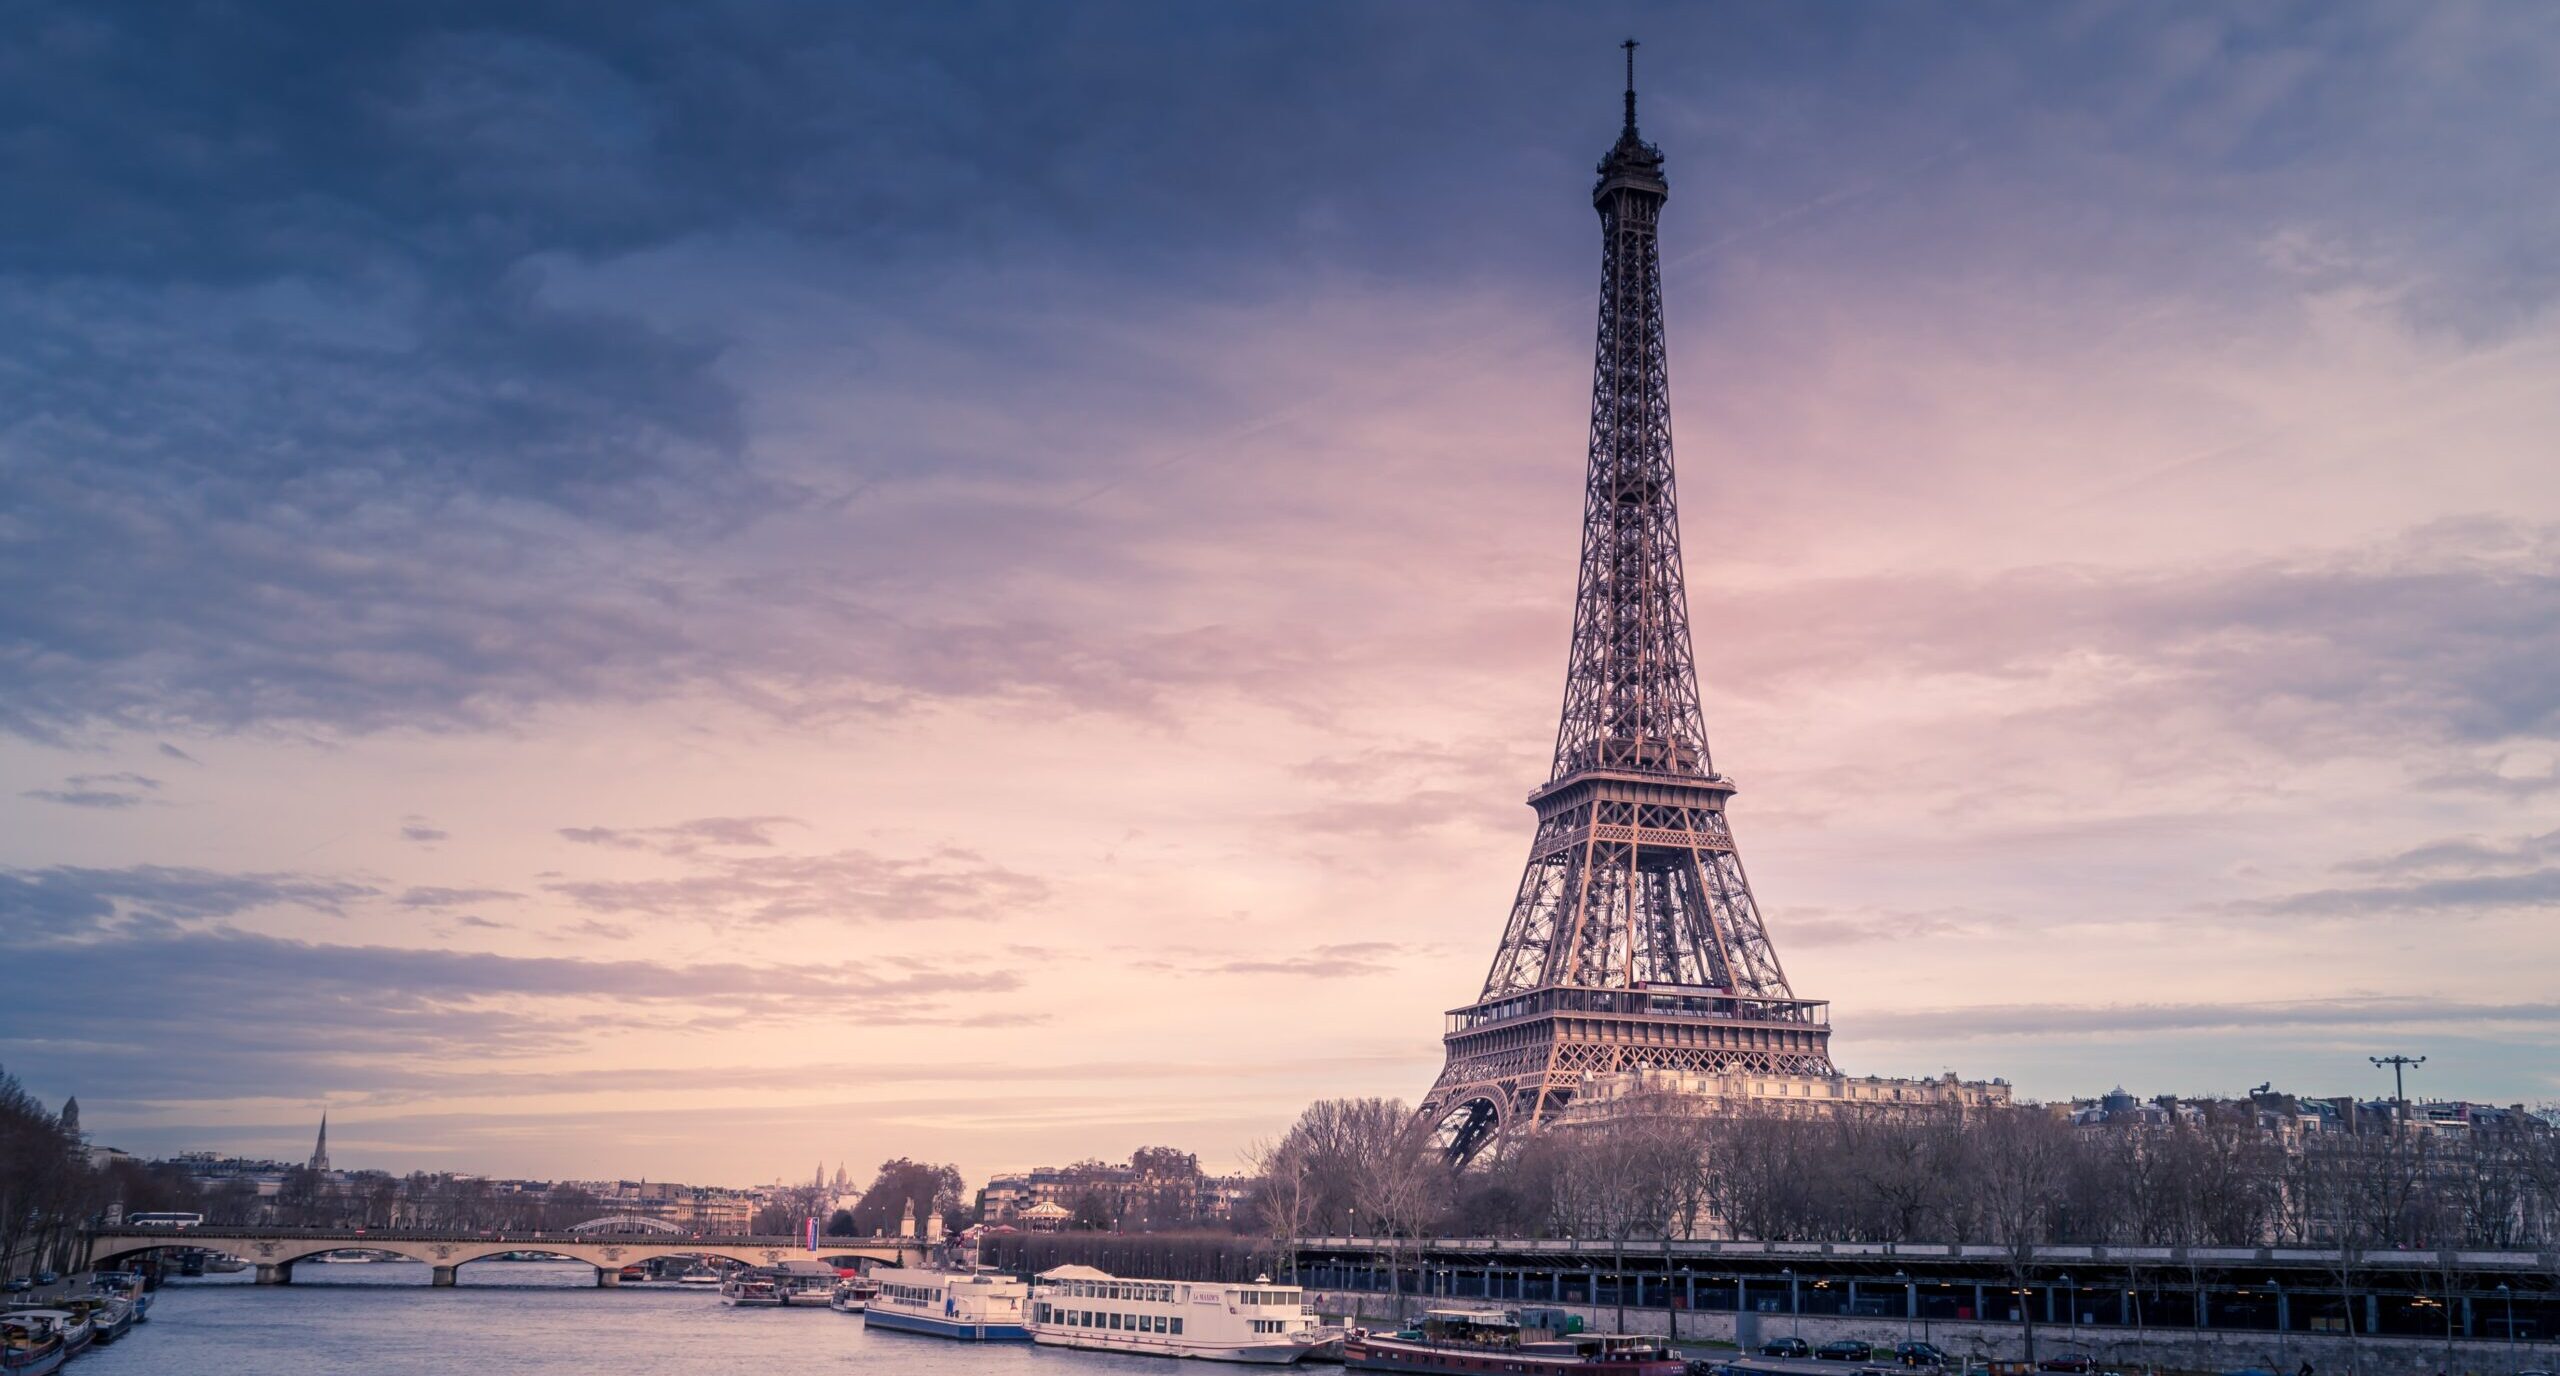 Le "syndrome de Paris" : la désillusion de la capitale française